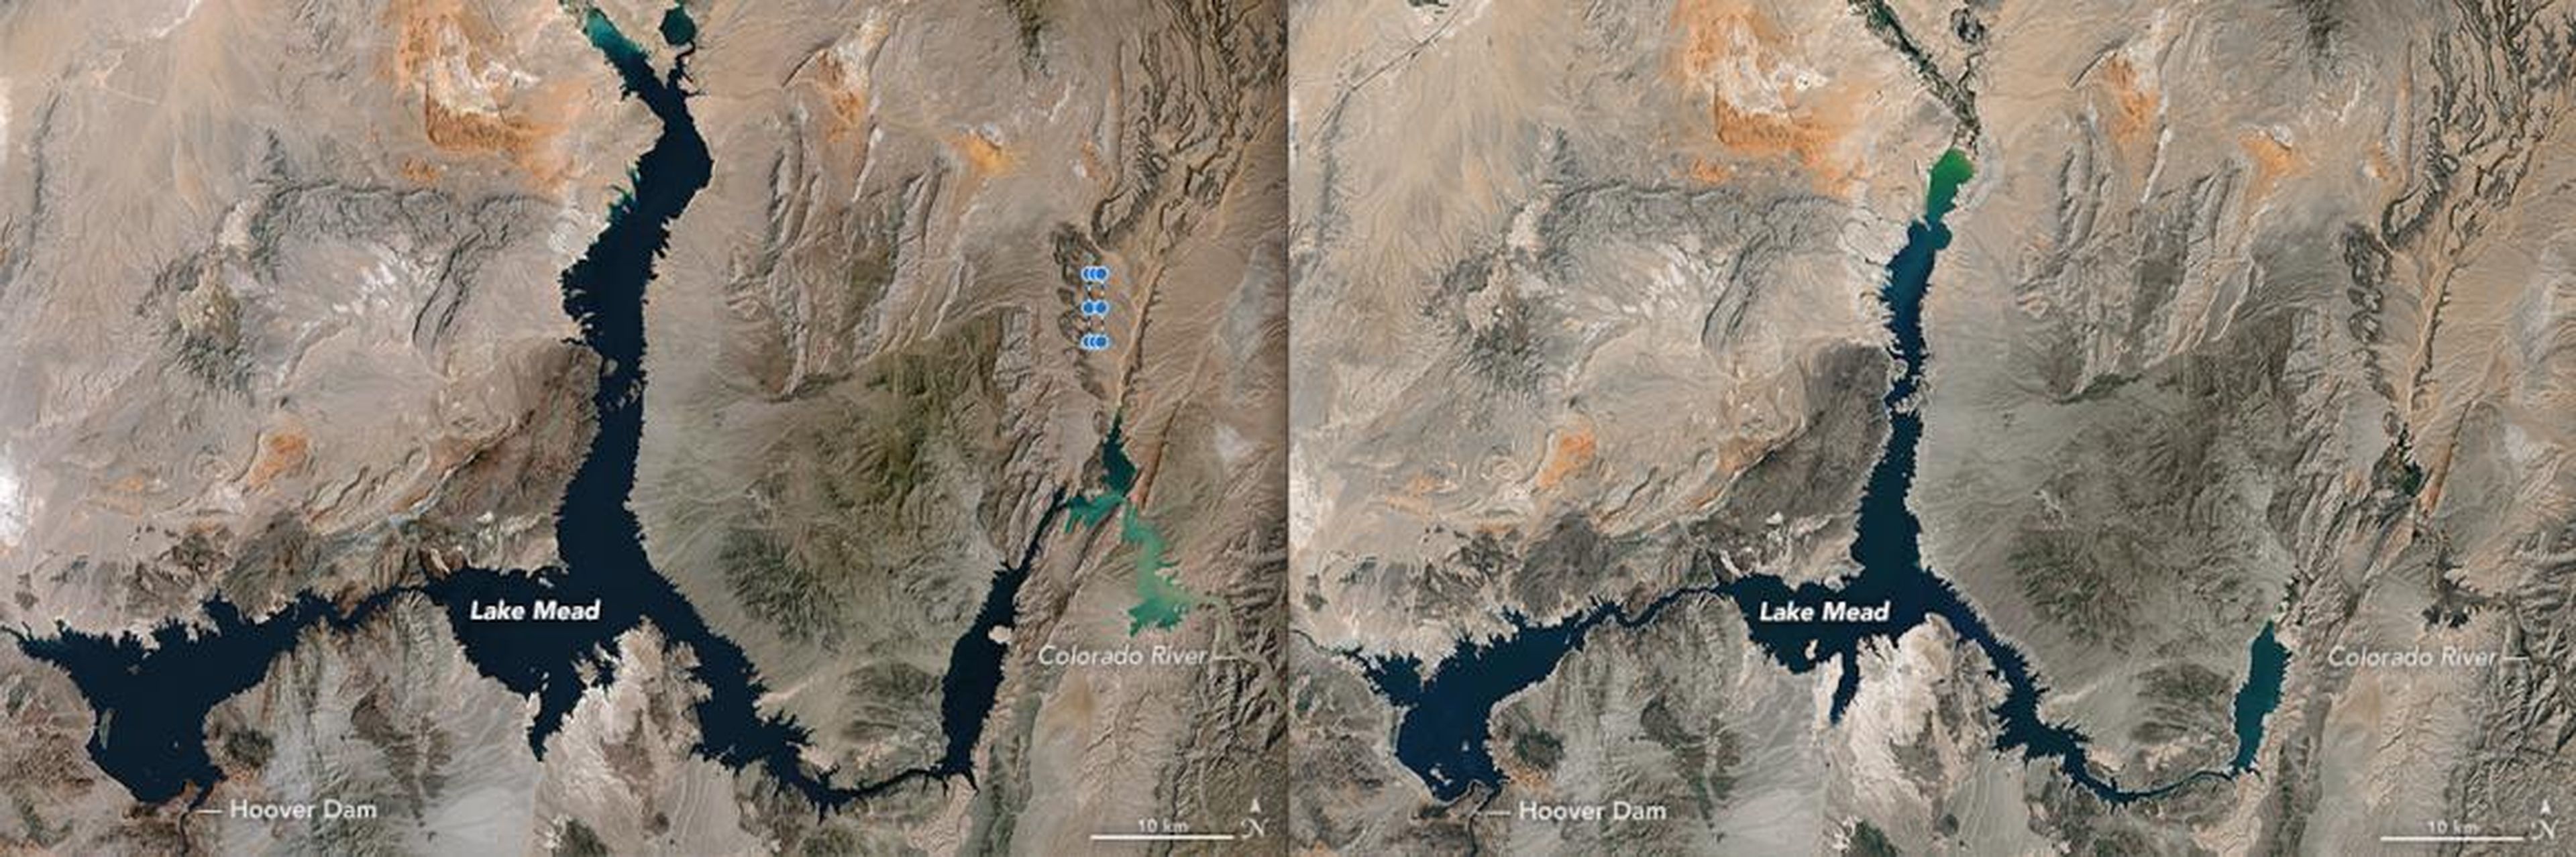 Las imágenes de satélite de la NASA de lado a lado muestran que el lago Mead se está reduciendo: la imagen izquierda se tomó el 16 de mayo de 1984 y la derecha el 25 de mayo de 2016.